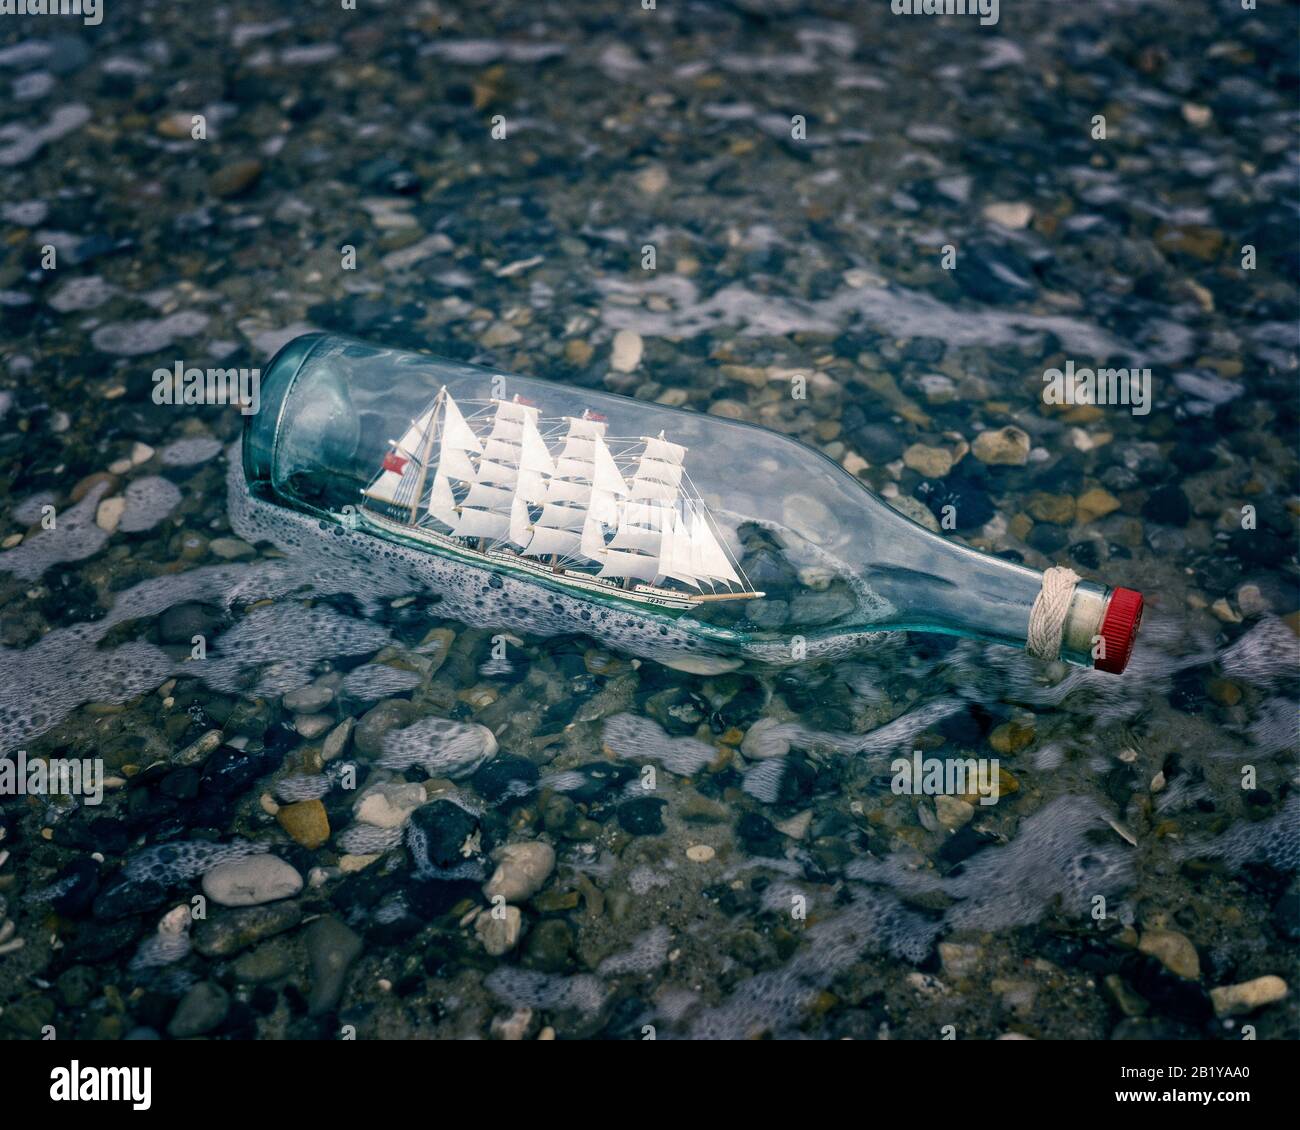 Modelo del velero ruso Sedov en botella de brandy. Foto de stock